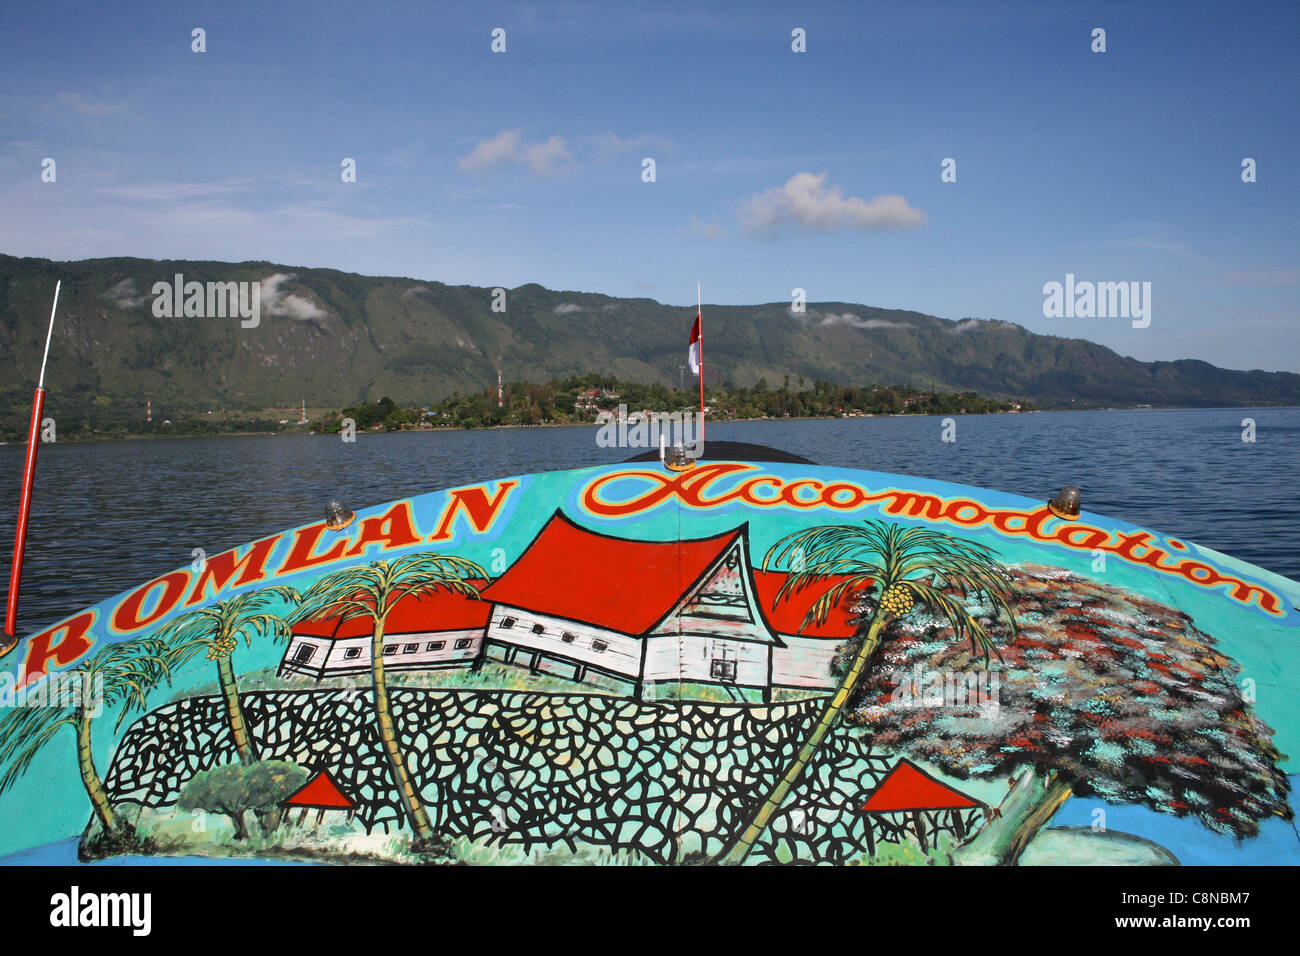 Bateau peint de couleurs vives, voile sur le Lac Toba Samosir approchant, l'île de Sumatra du nord Banque D'Images